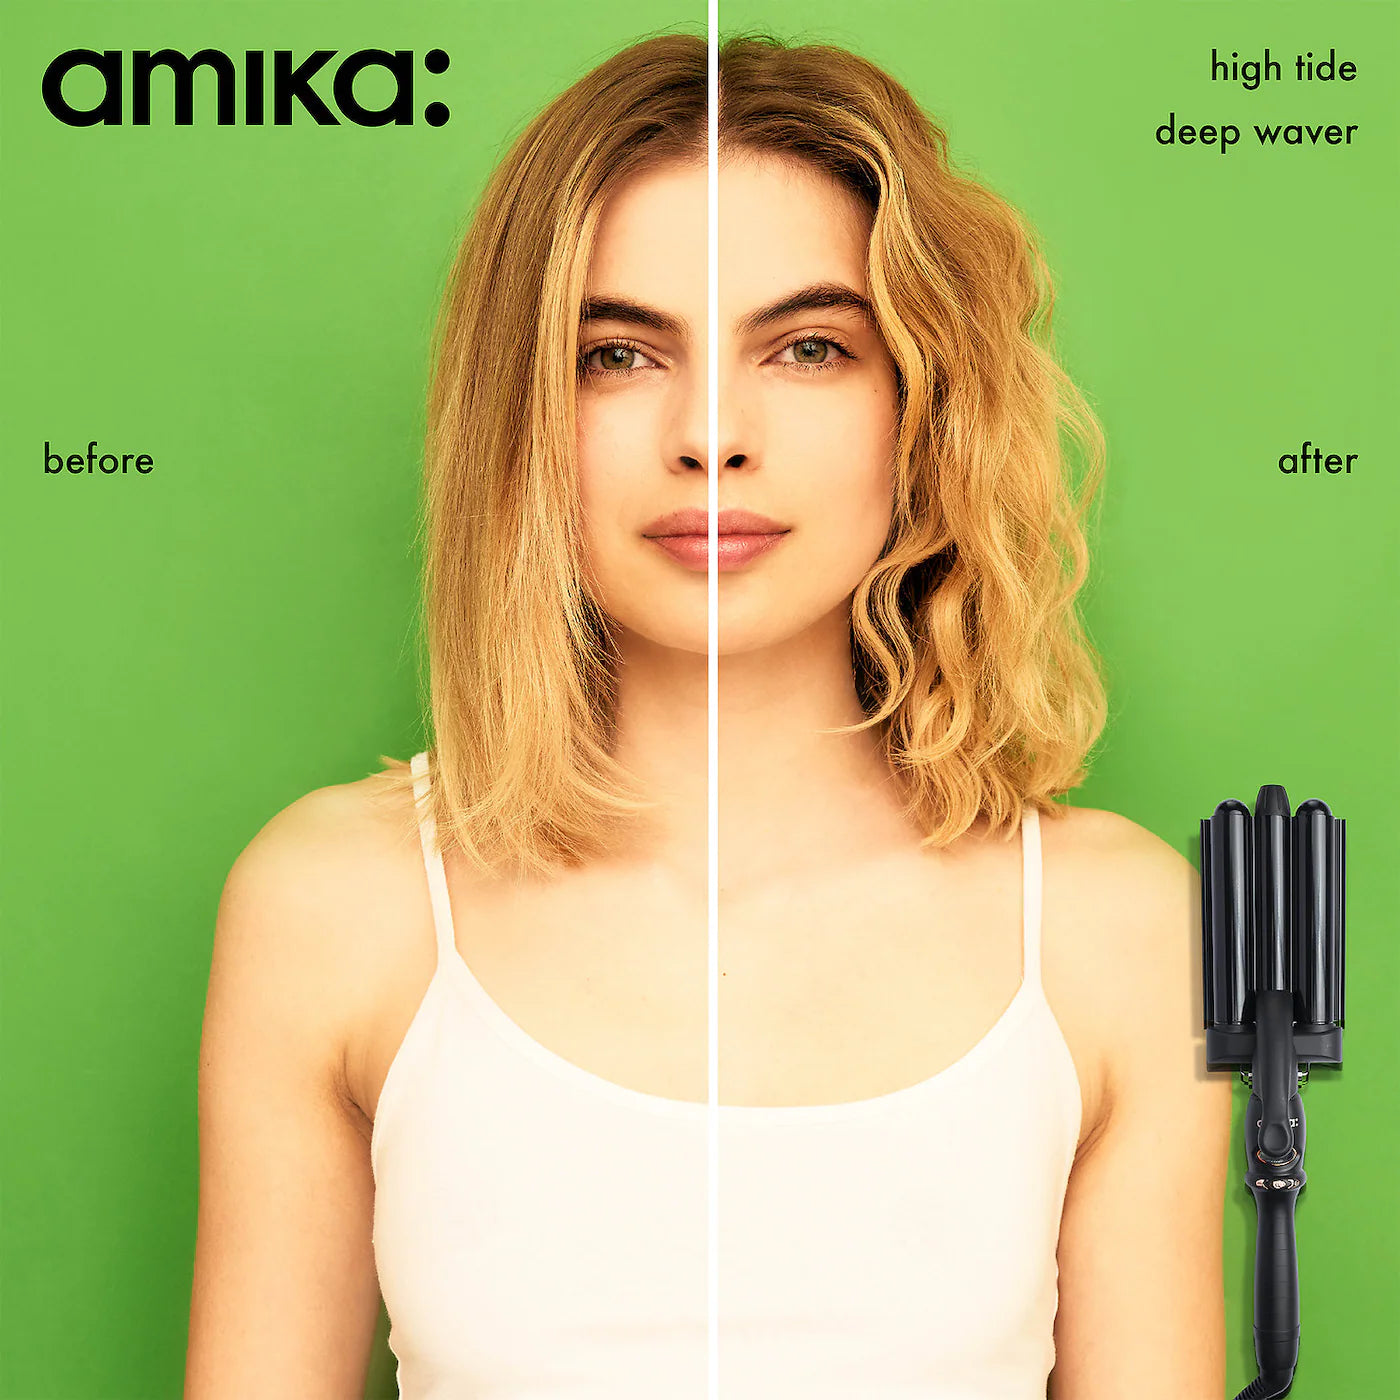 amika - High Tide Deep Wave Hair Crimper